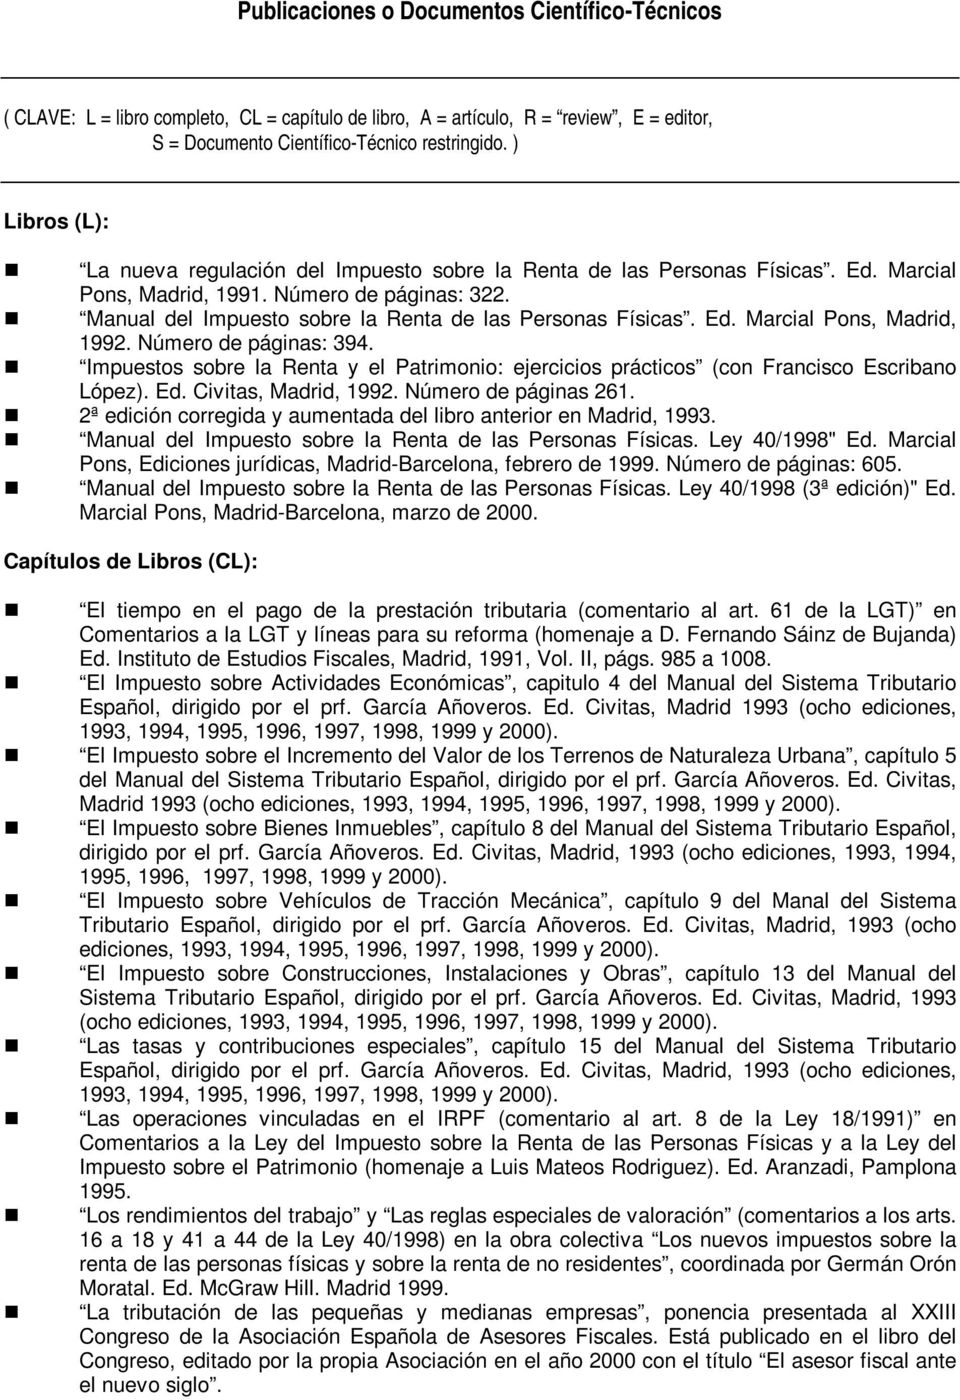 Manual del Impuesto sobre la Renta de las Personas Físicas. Ed. Marcial Pons, Madrid, 1992. Número de páginas: 394.